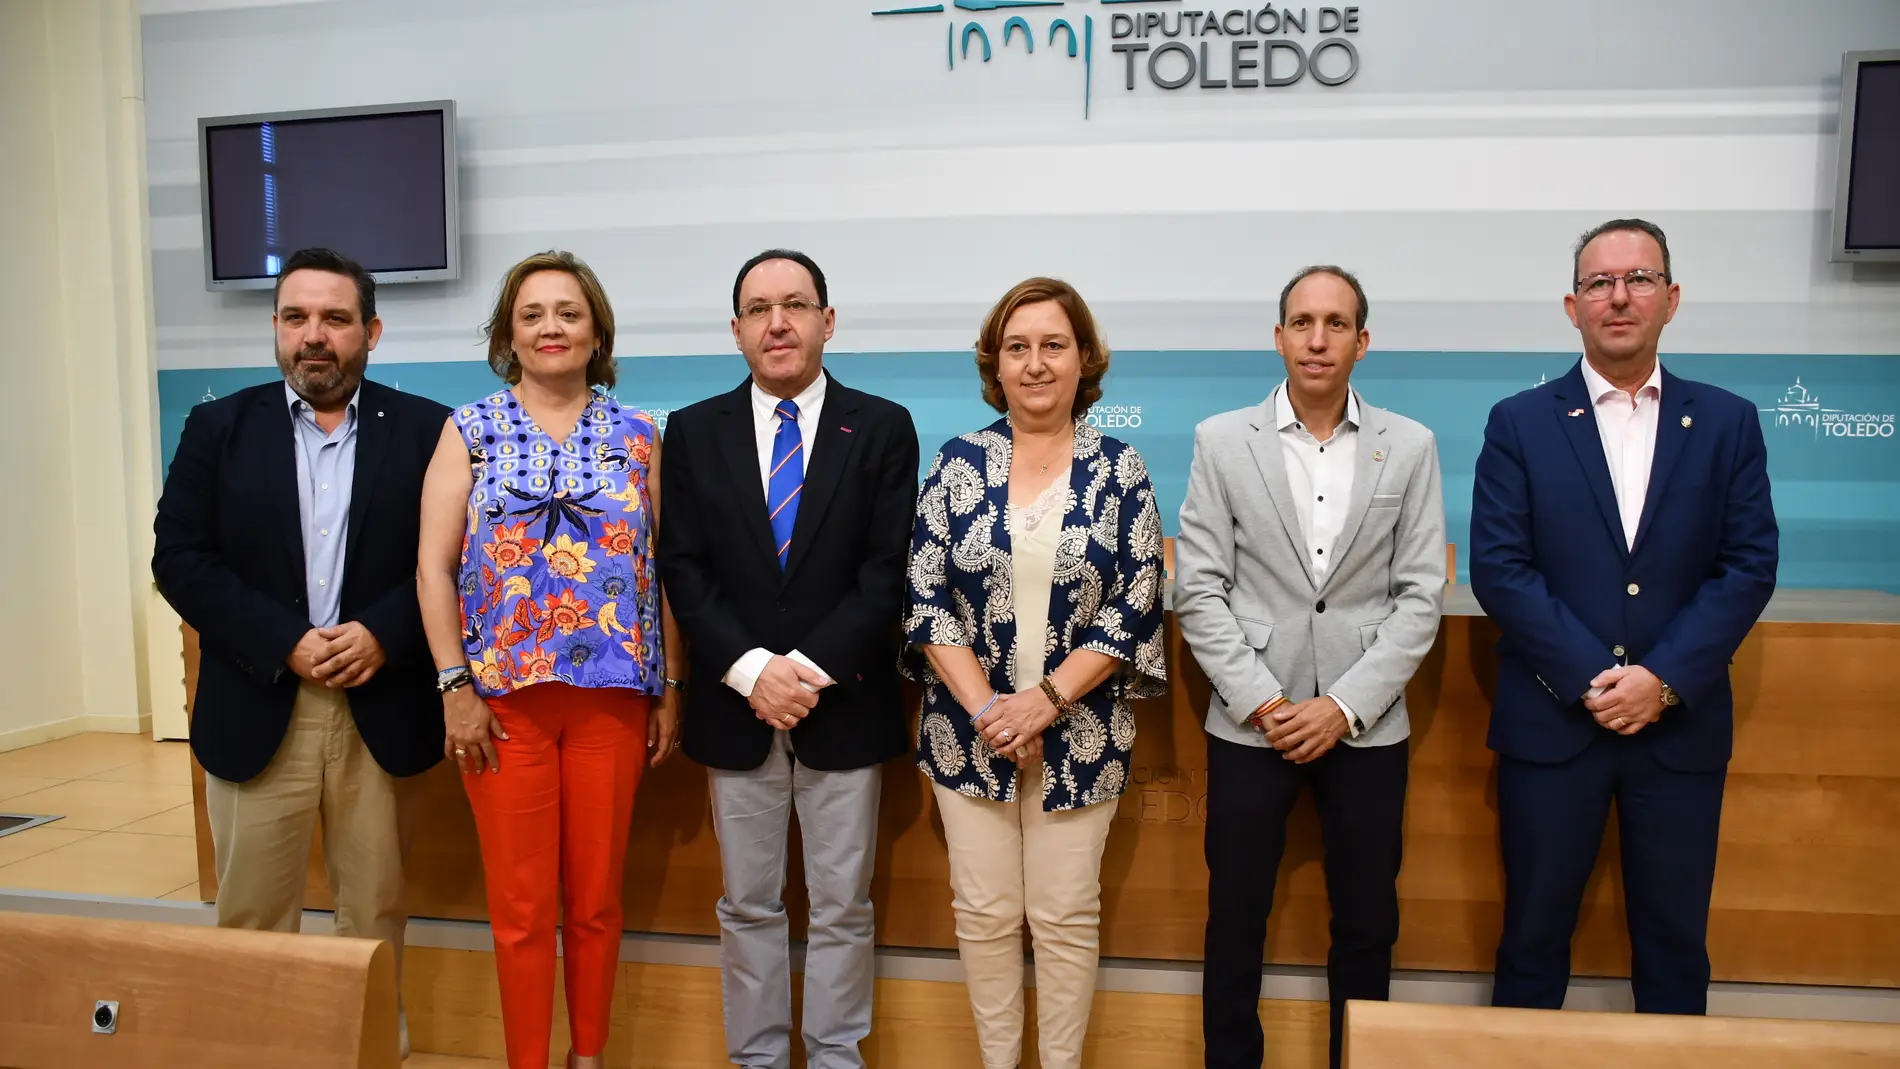 Presidenta, vicepresidentes y portavoz de la Diputación de Toledo